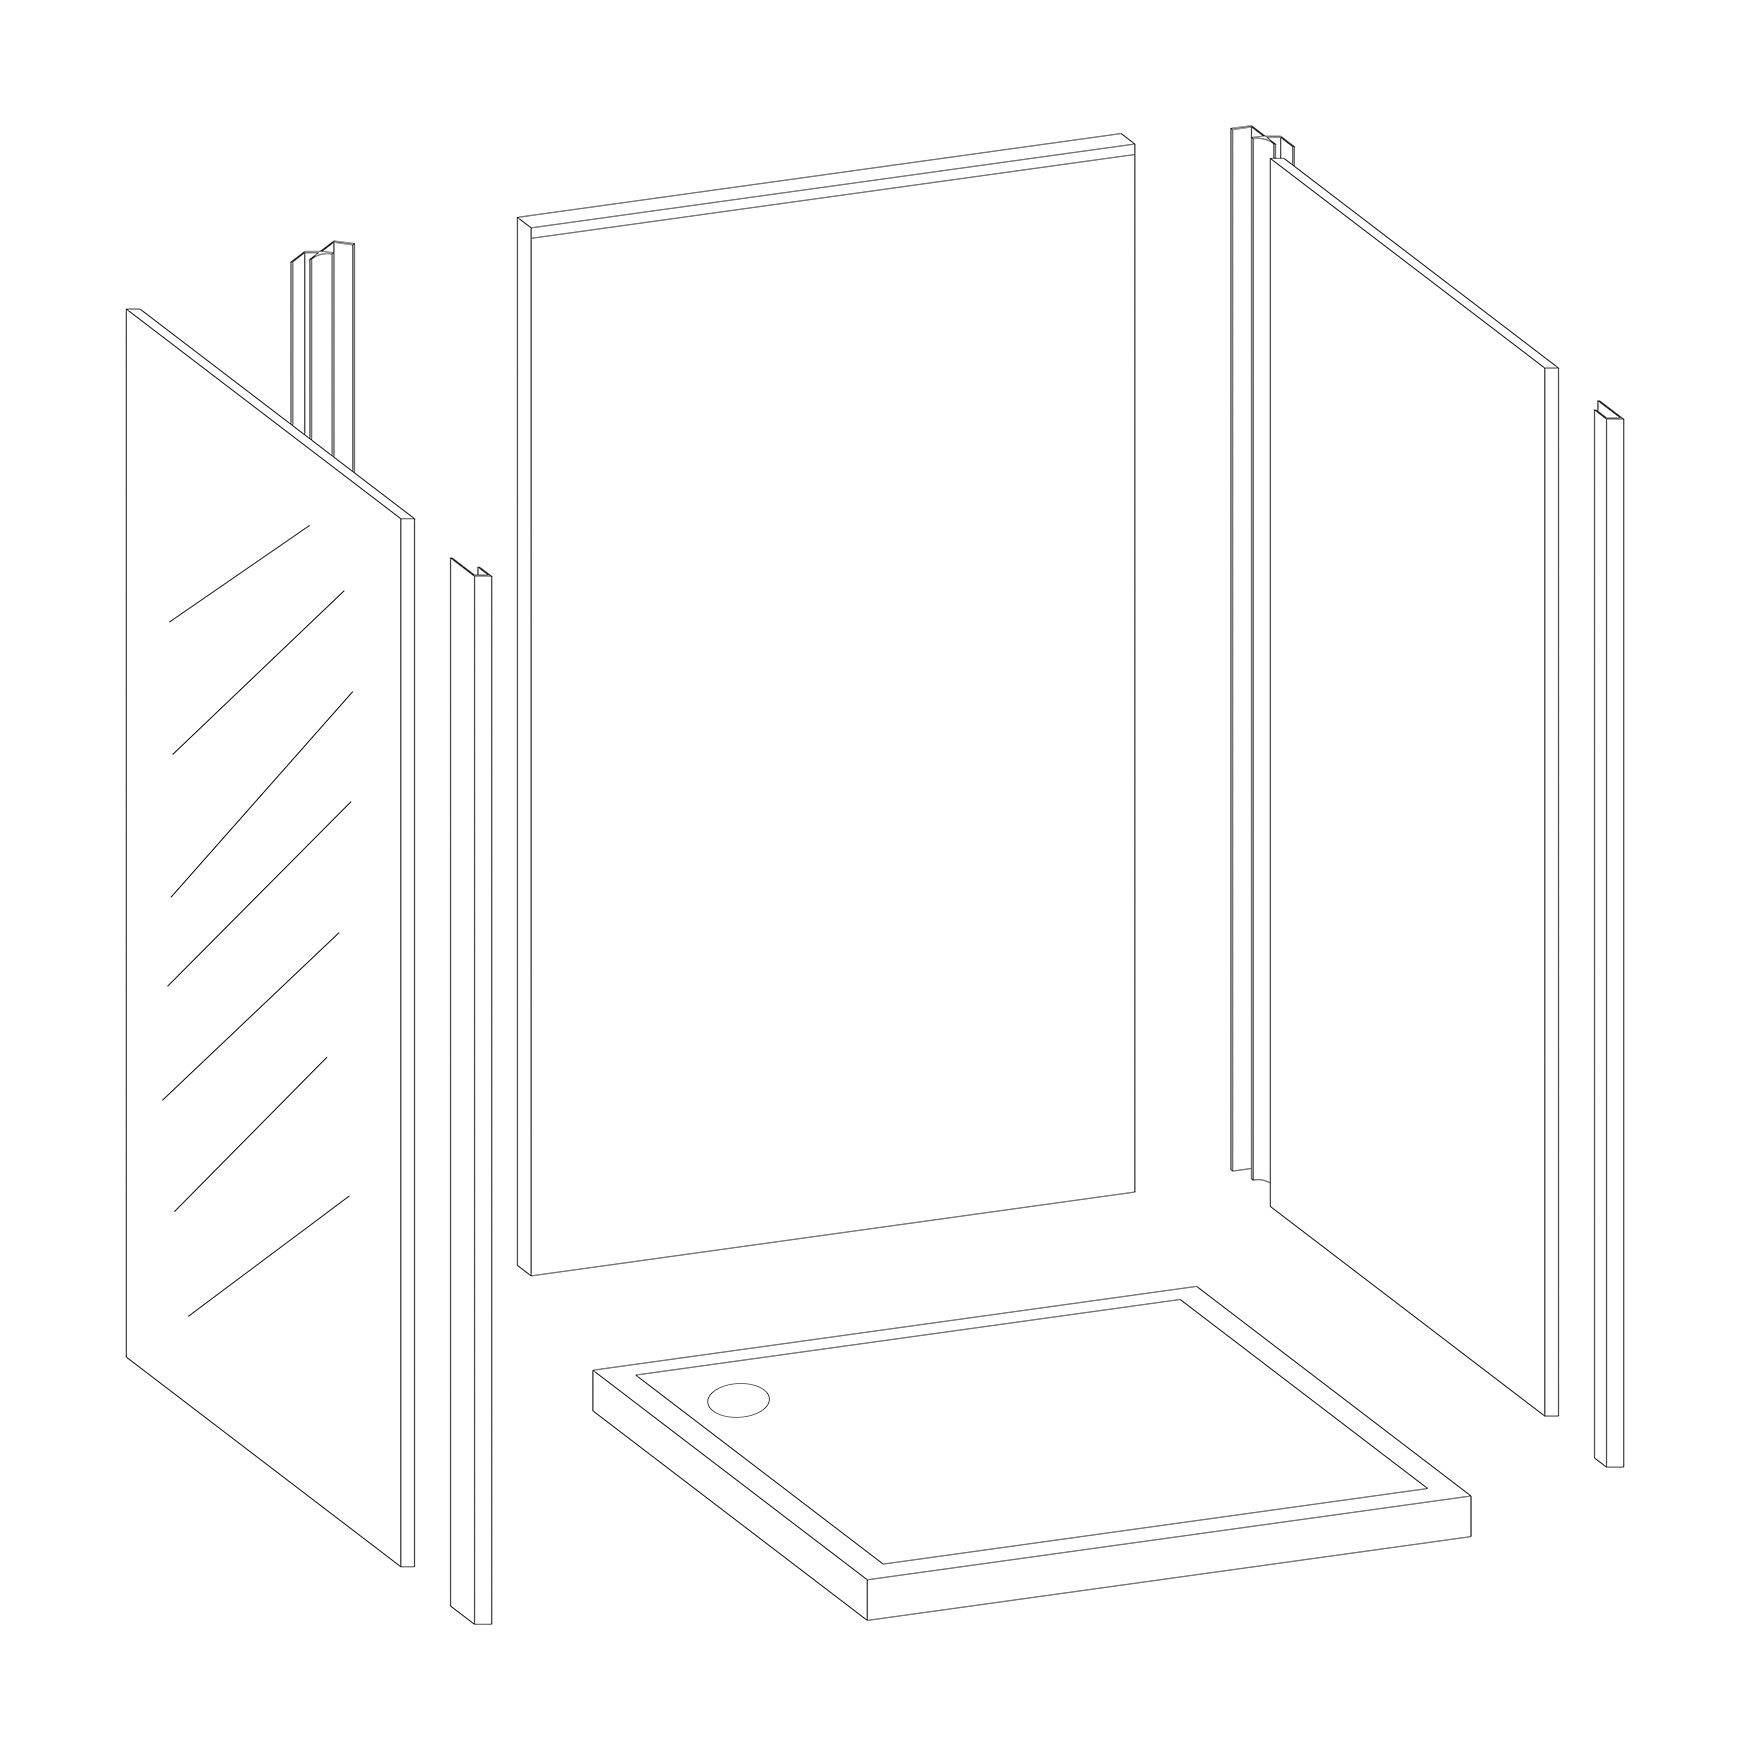 Splashwall Gloss Cream Tile effect 3 sided Shower Panel kit (L)2420mm (W)1200mm (T)3mm